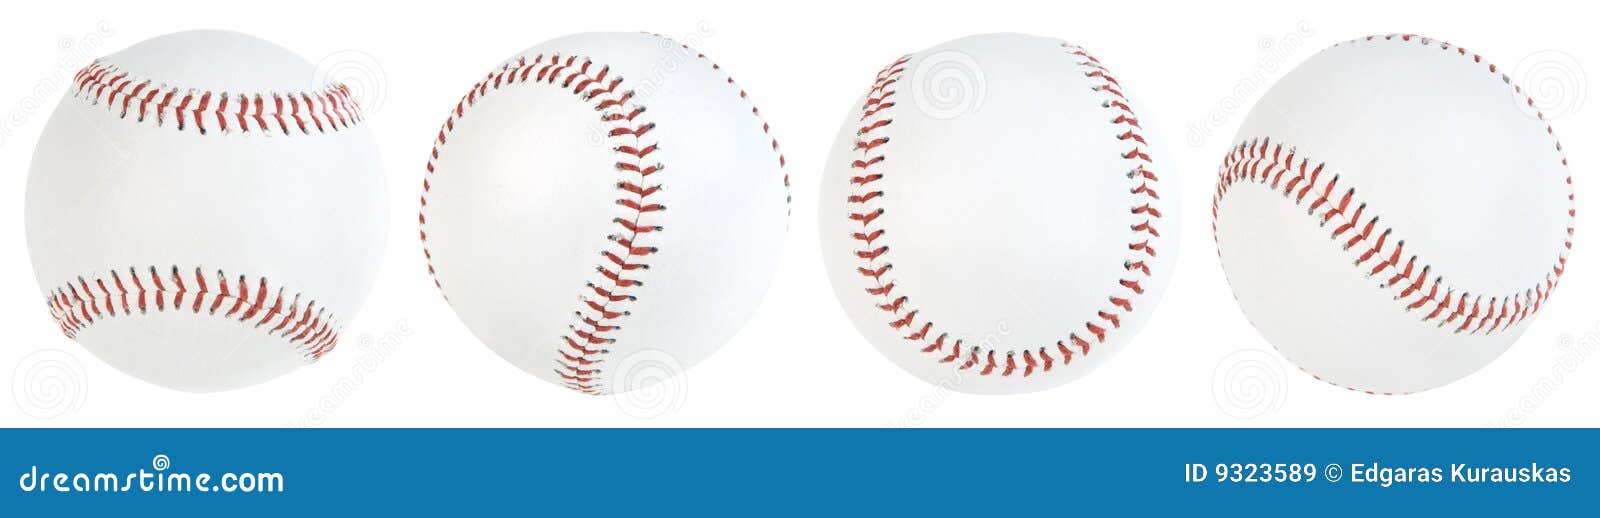 Four isolated baseballs stock Image - 9323589